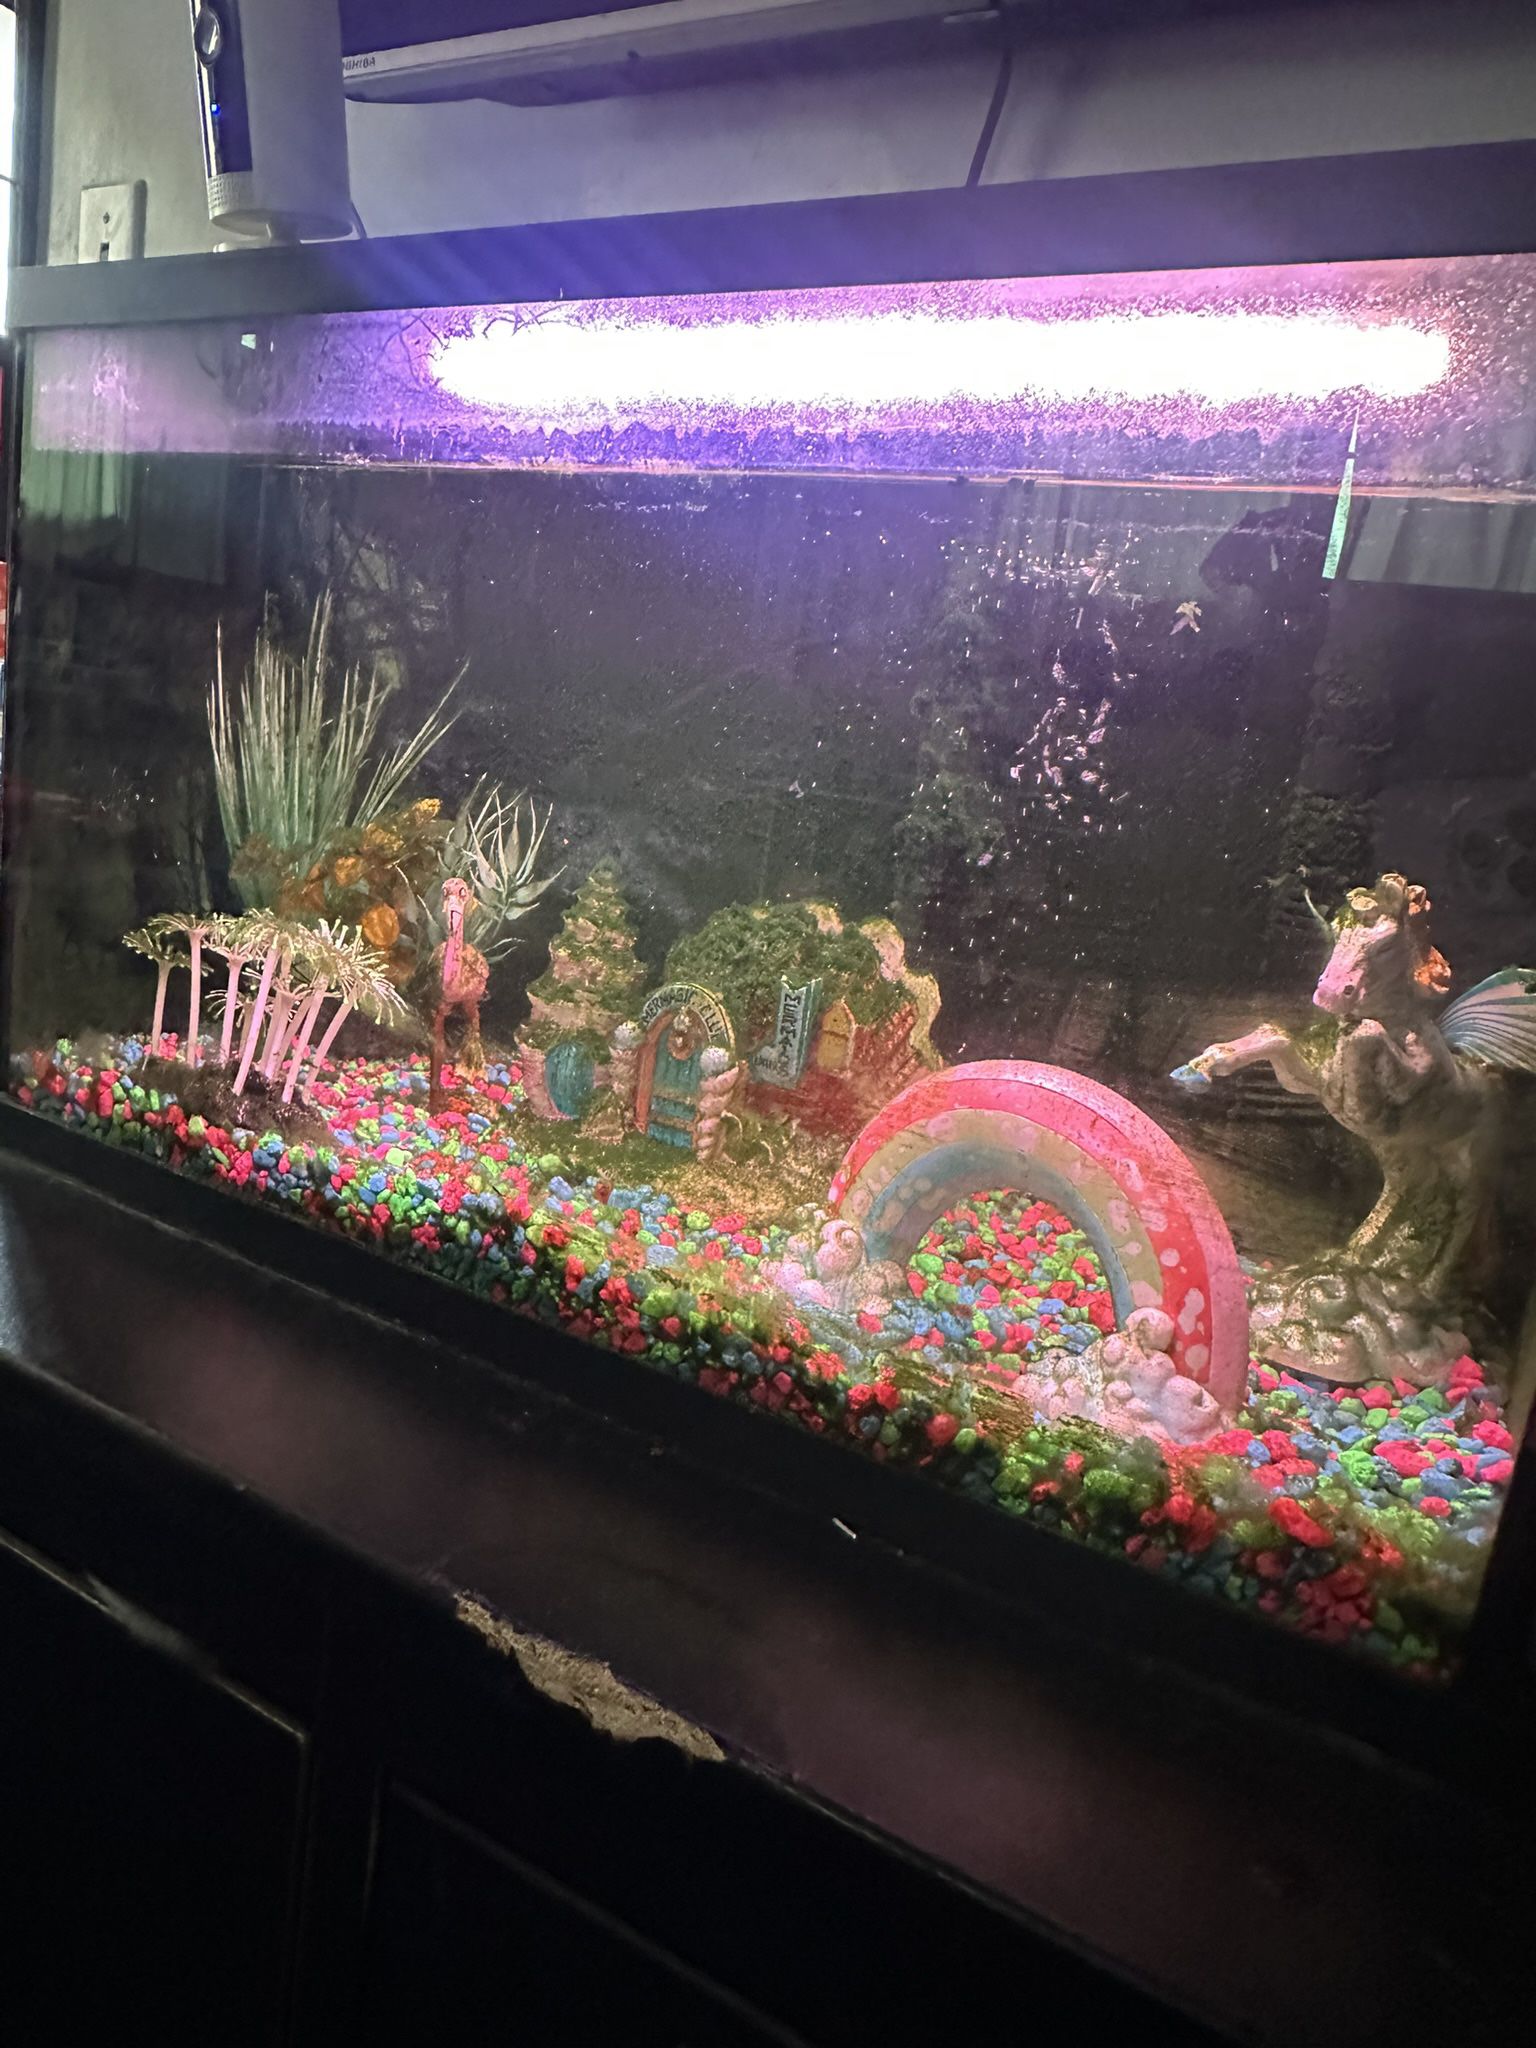 Glow In The Dark Fish Tank